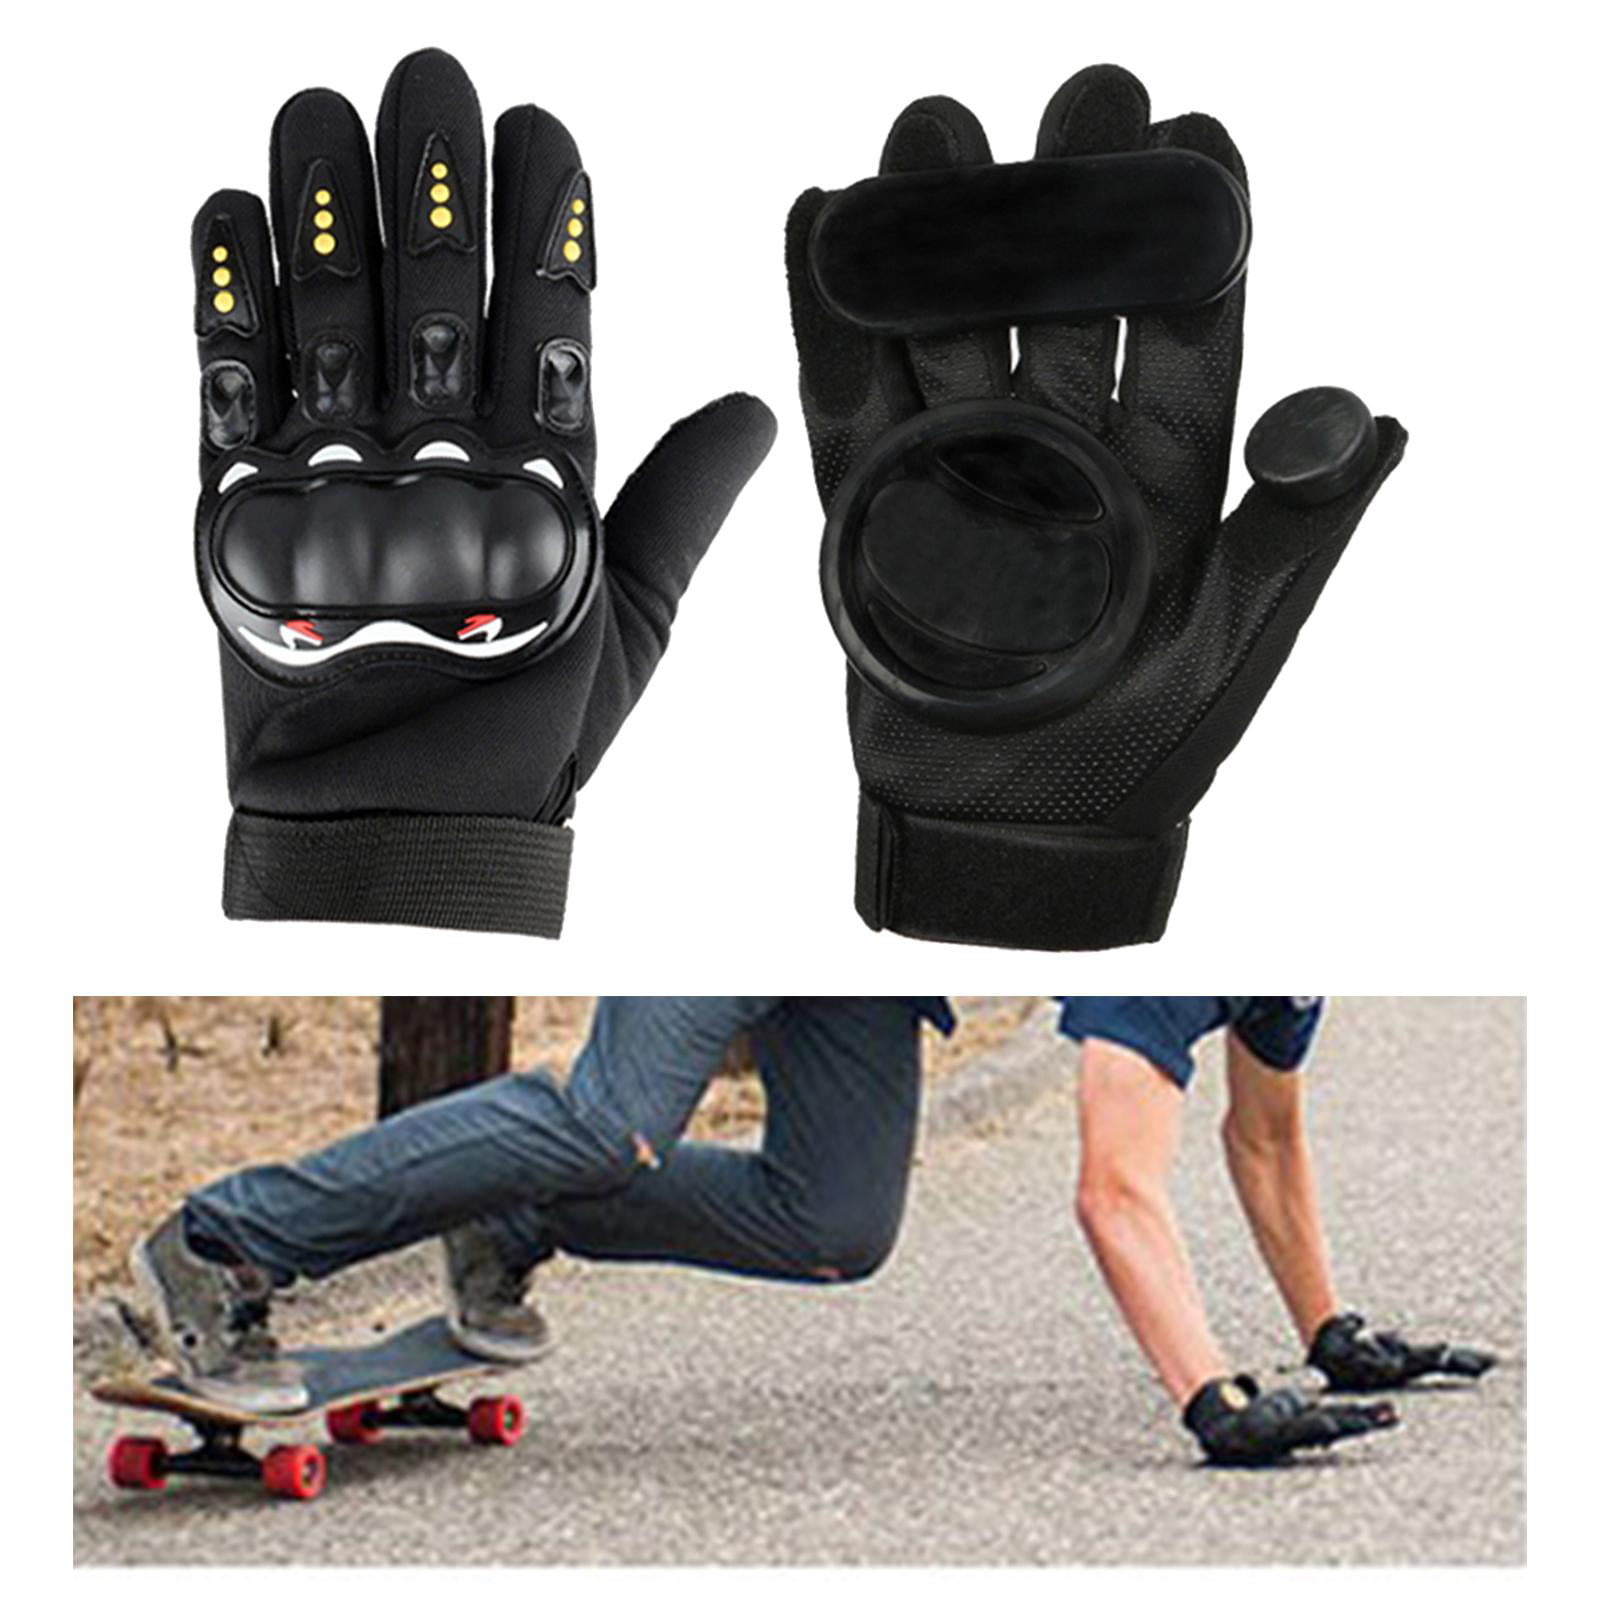 Prisnedsættelse forholdet jungle 1 Pair Skateboard Gloves with Sliders, Standard Longboard Downhill Slide  Gloves Skate Gloves for Men Women Outdoor Sports Protective Accessories -  Walmart.com